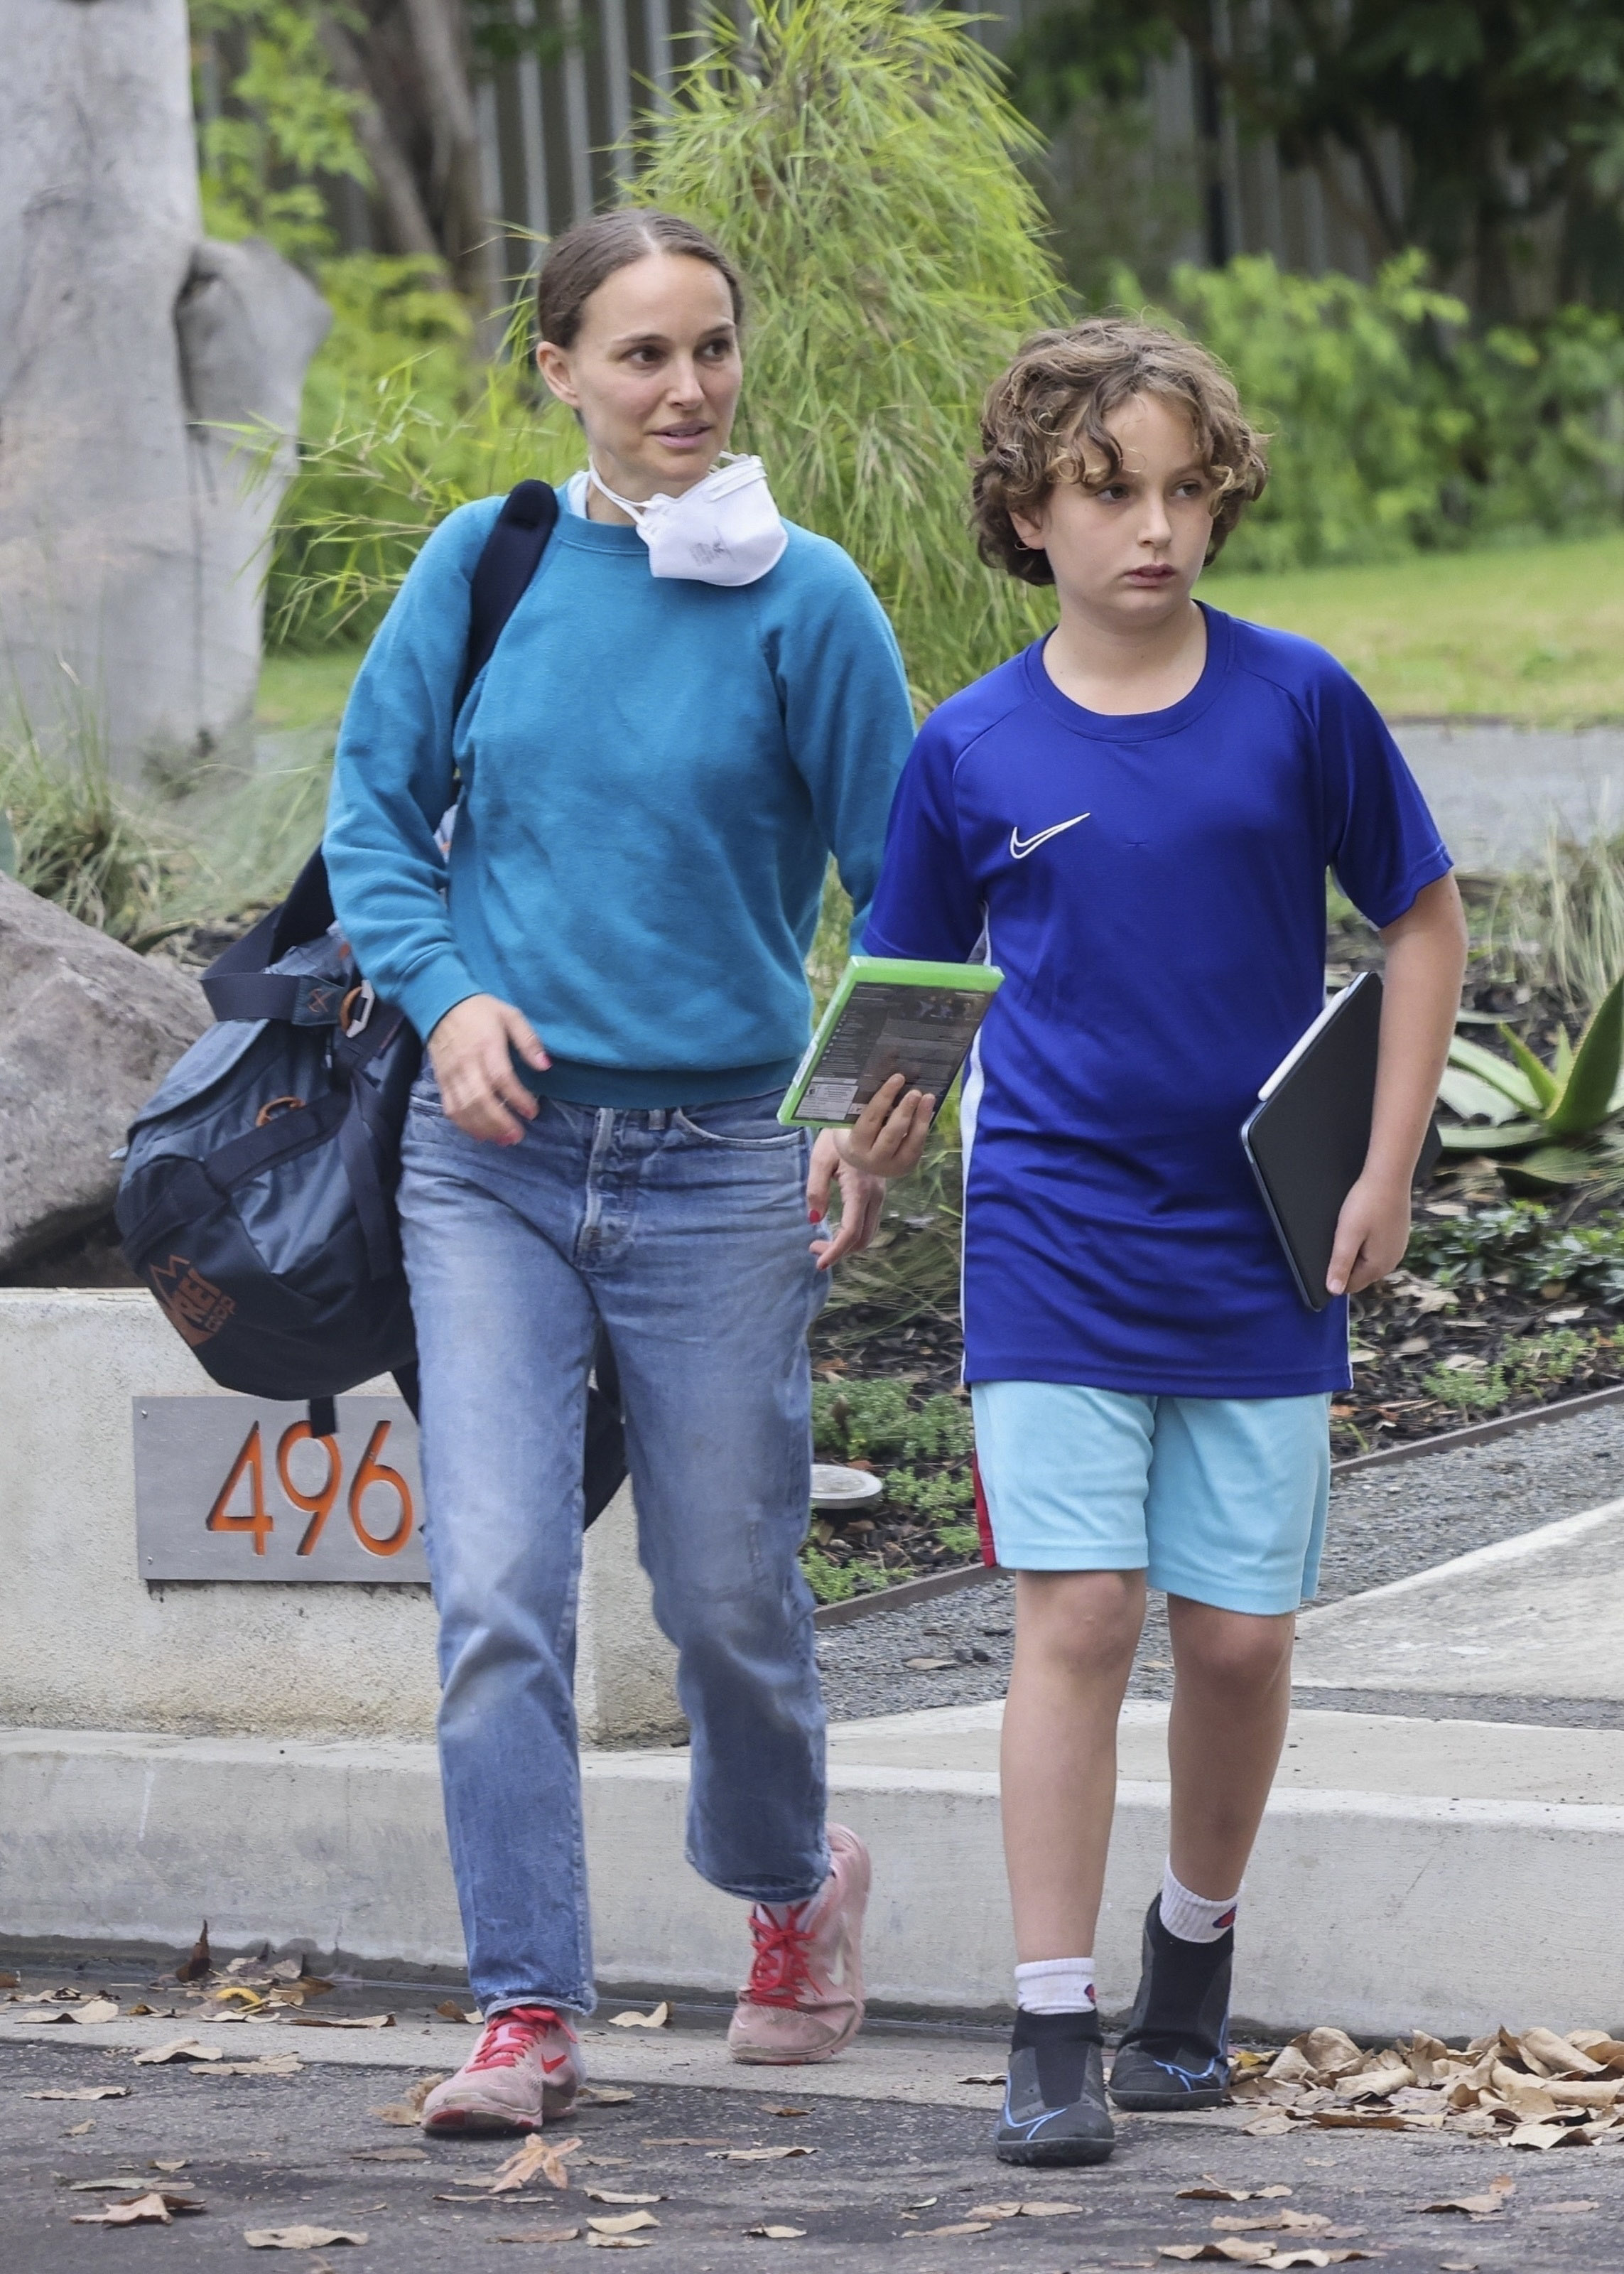 Natalie Portman fue fotografiada mientras llegaba a buscar a su hijo a la casa de un amigo en Los Ángeles luego de haber tenido una actividad deportiva. La actriz cargó el bolso del niño hasta su auto y regresaron a su hogar